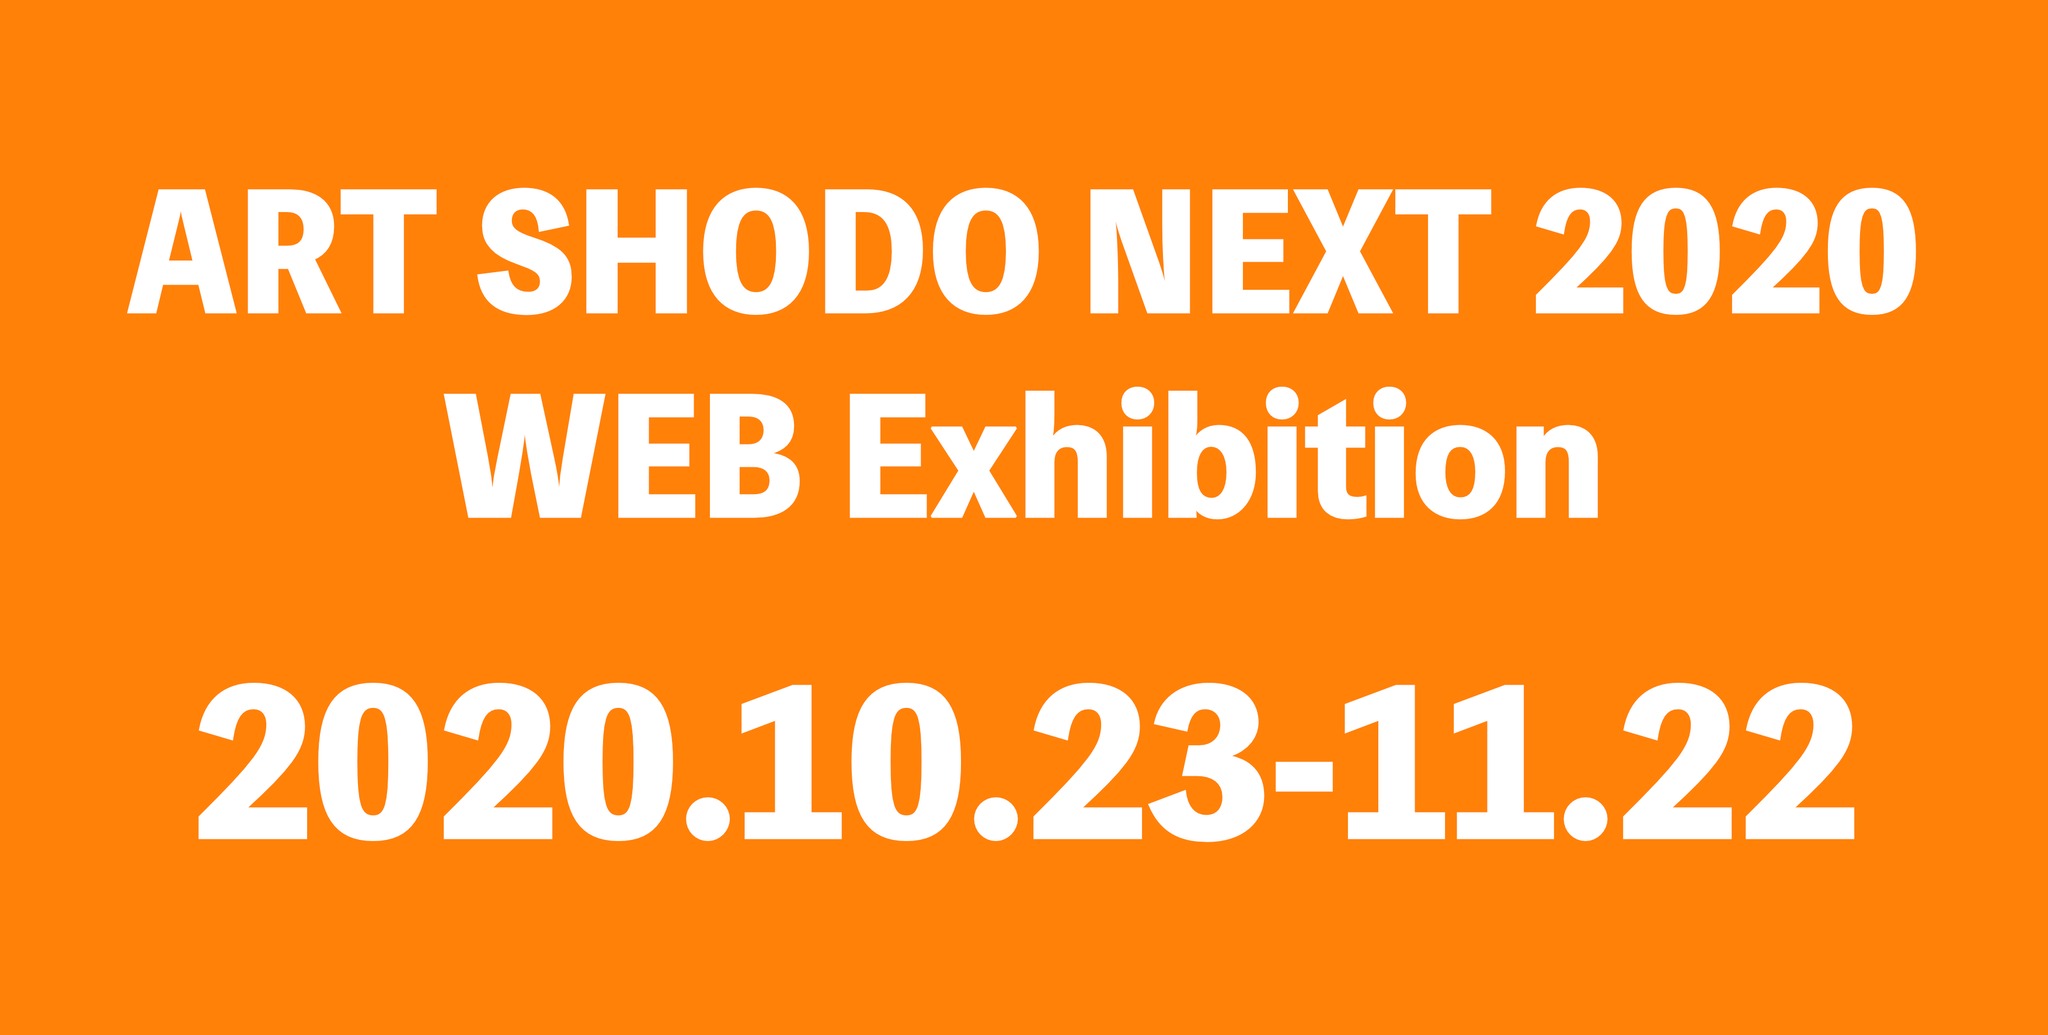 ART SHODO FESTA WEB Exhibition